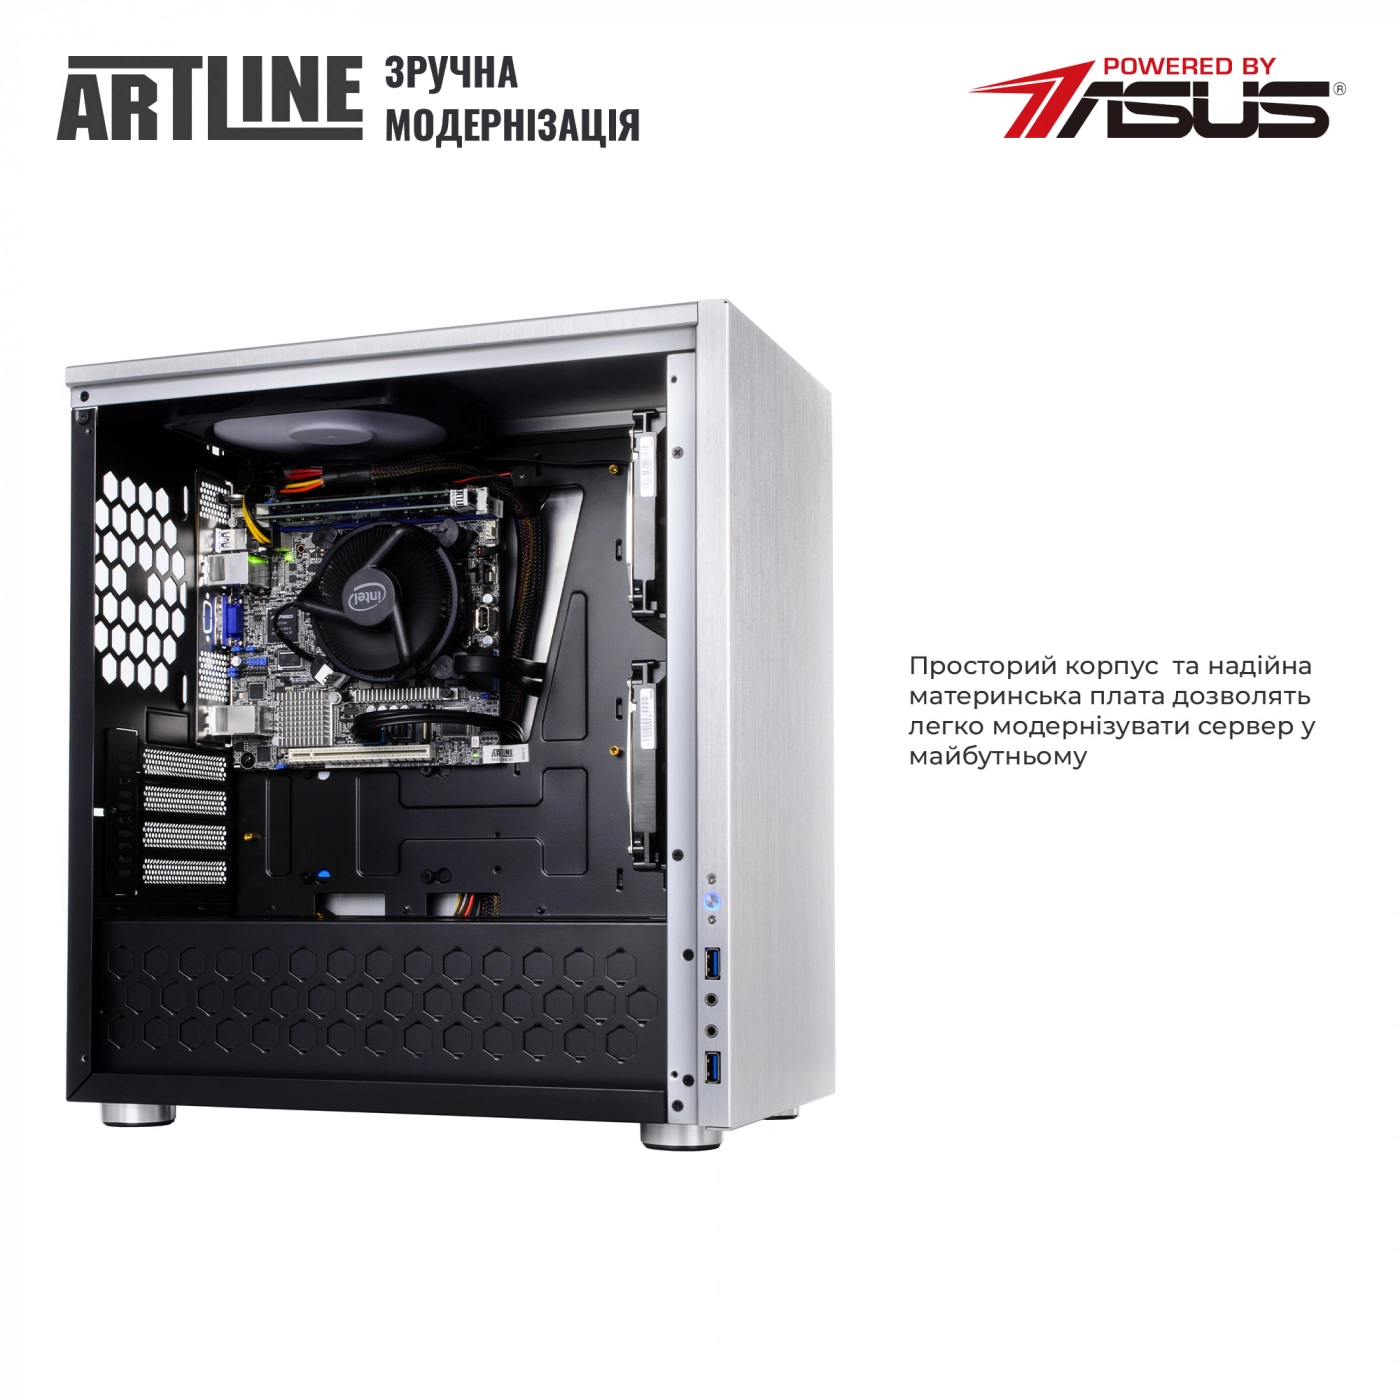 Купить Сервер ARTLINE Business T21v05 - фото 8